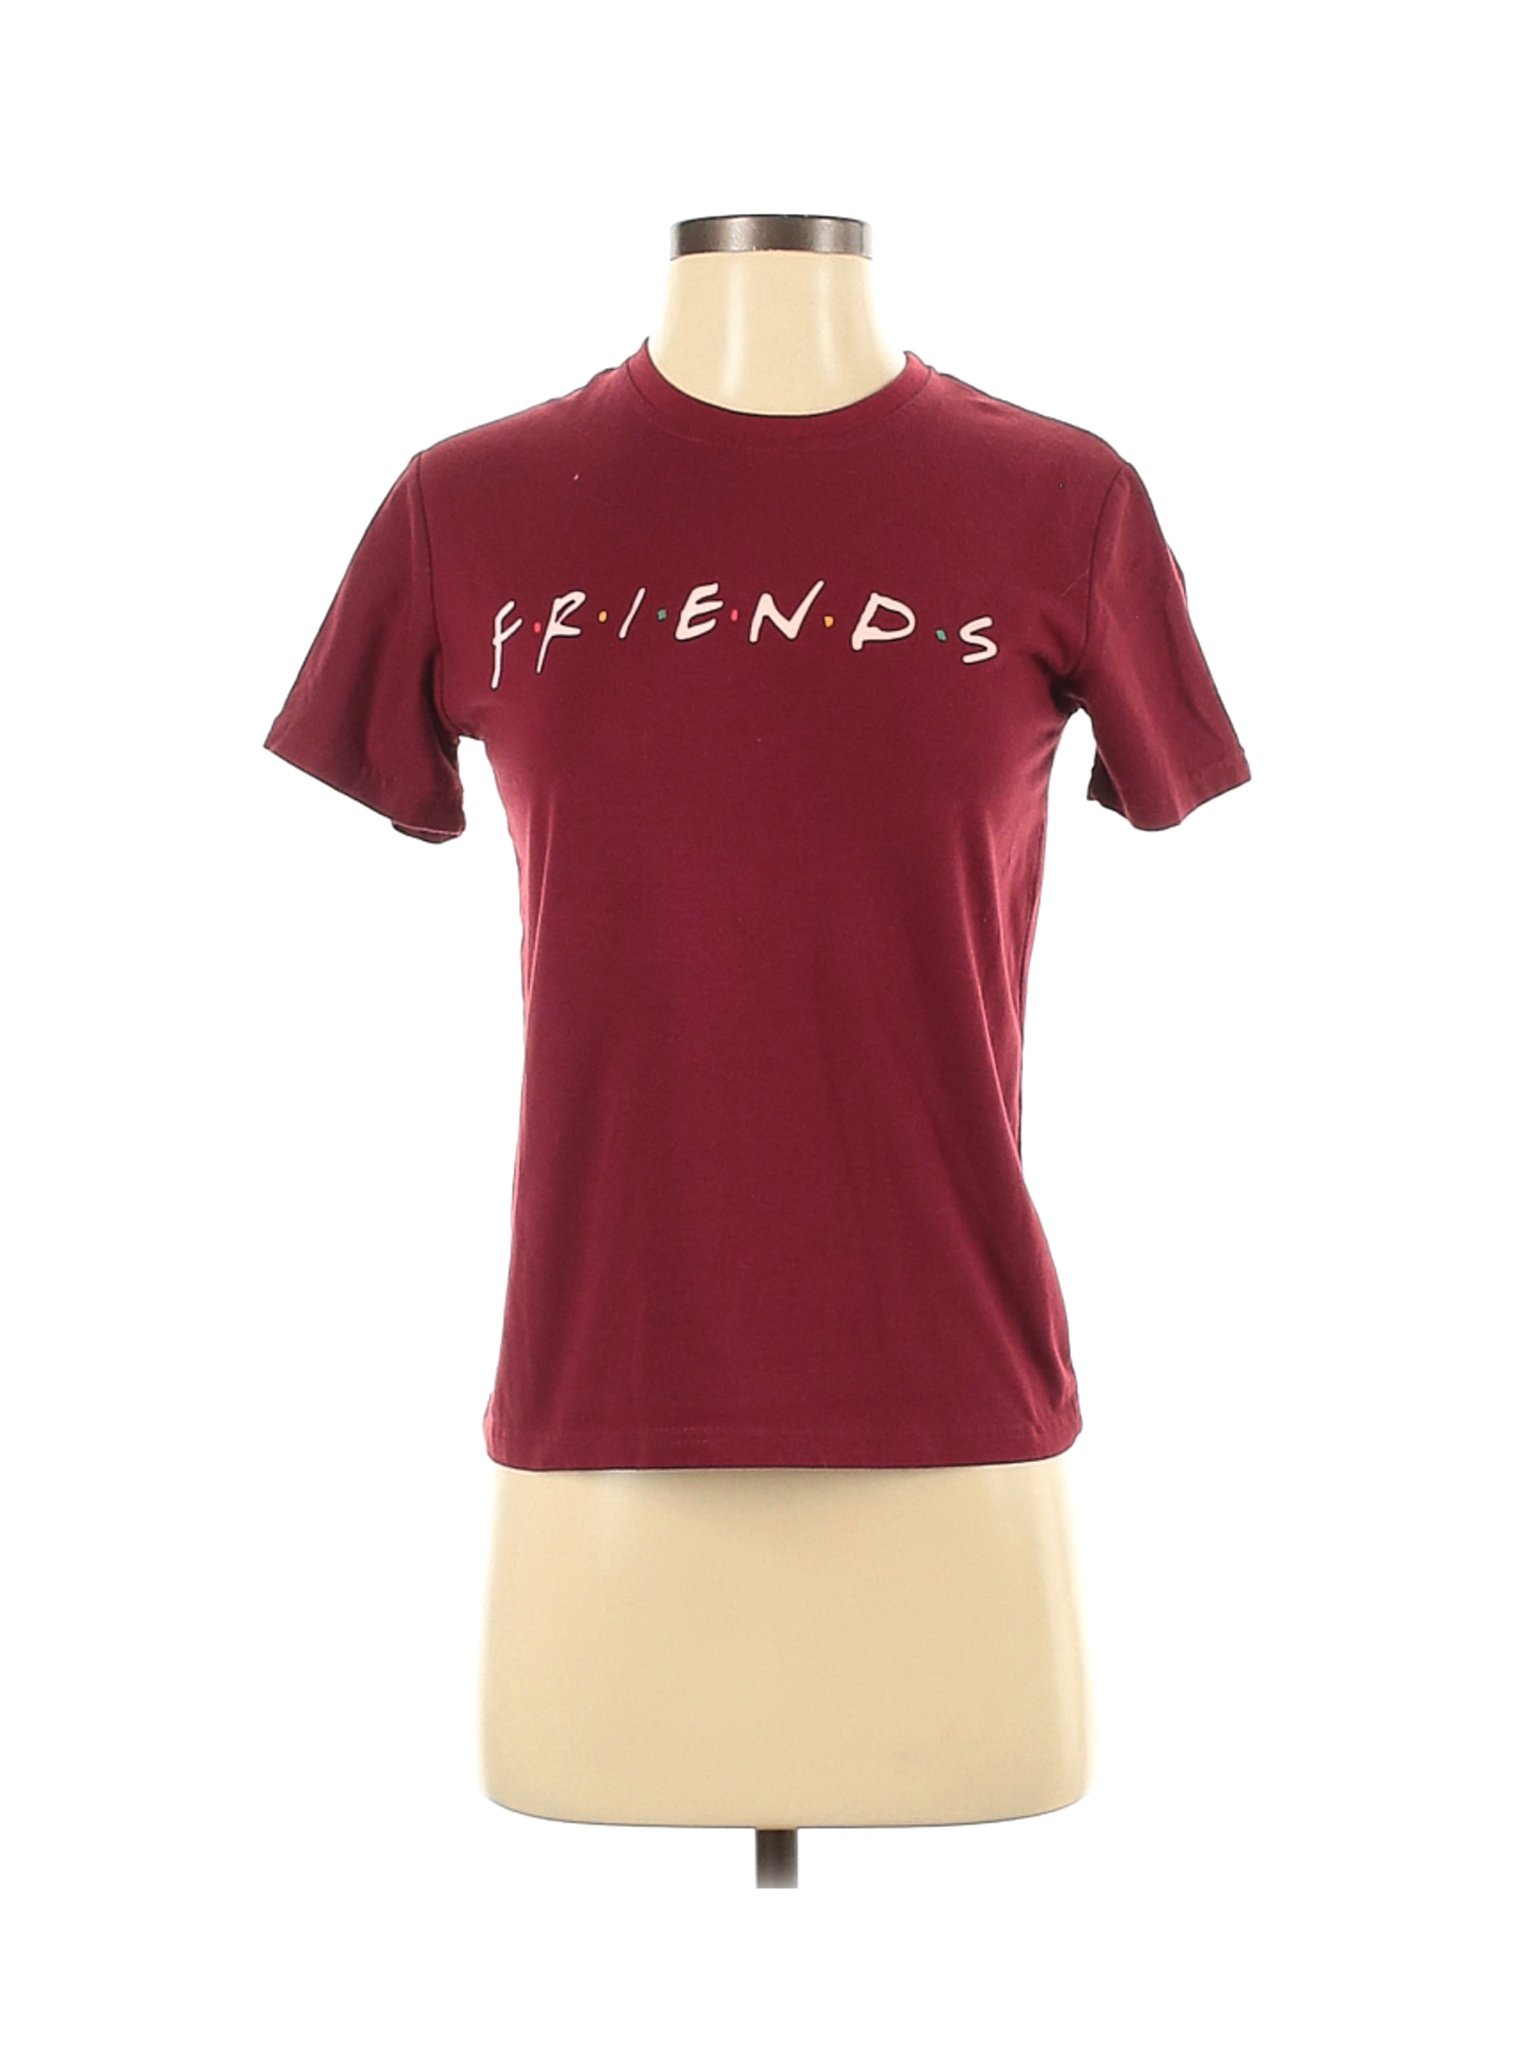 Unbranded Women Red Short Sleeve T-Shirt S | eBay